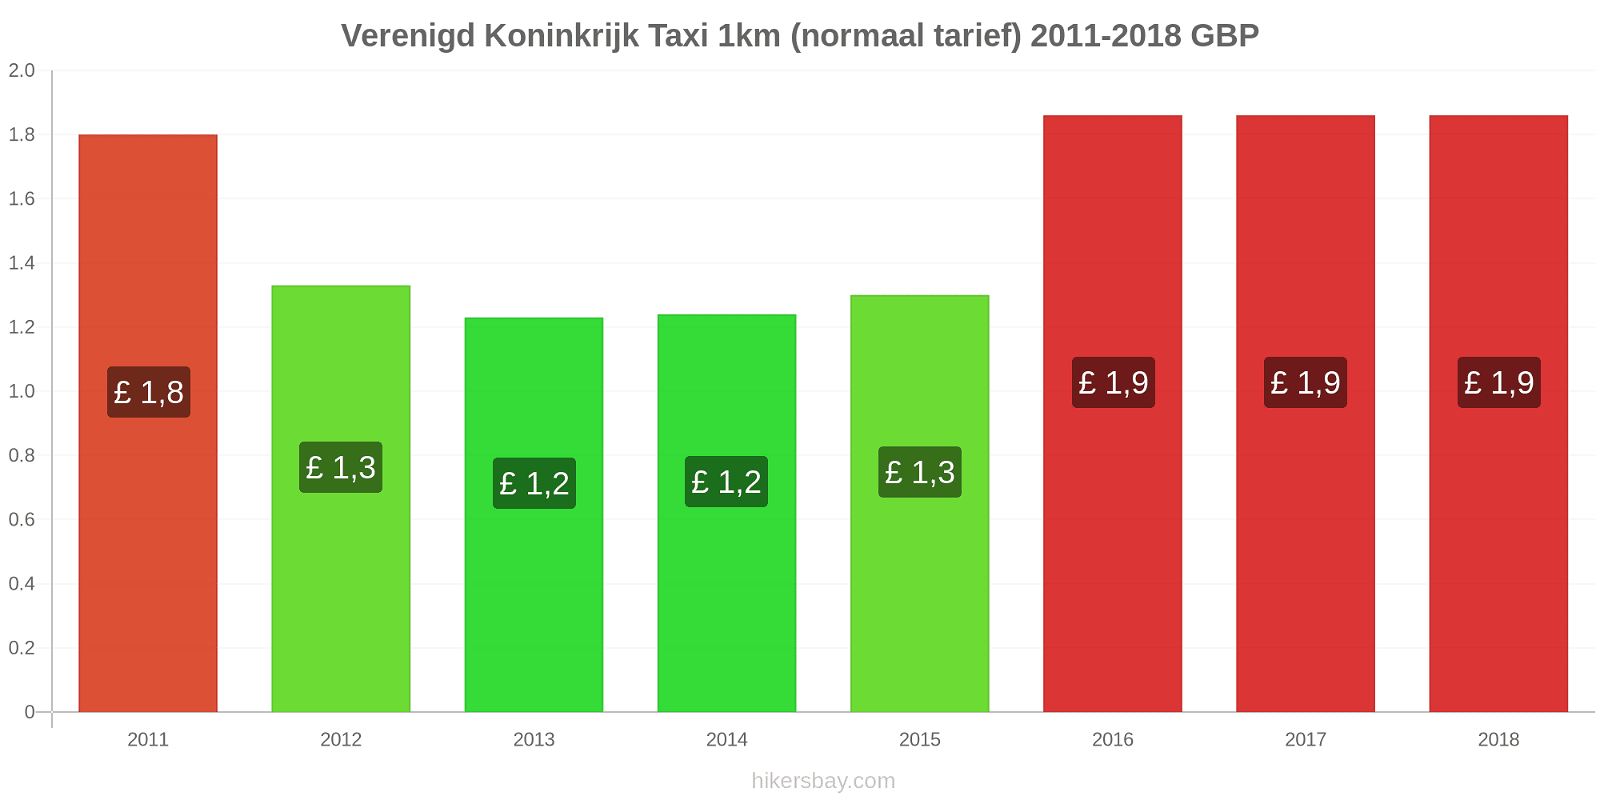 Verenigd Koninkrijk prijswijzigingen Taxi 1km (normaal tarief) hikersbay.com